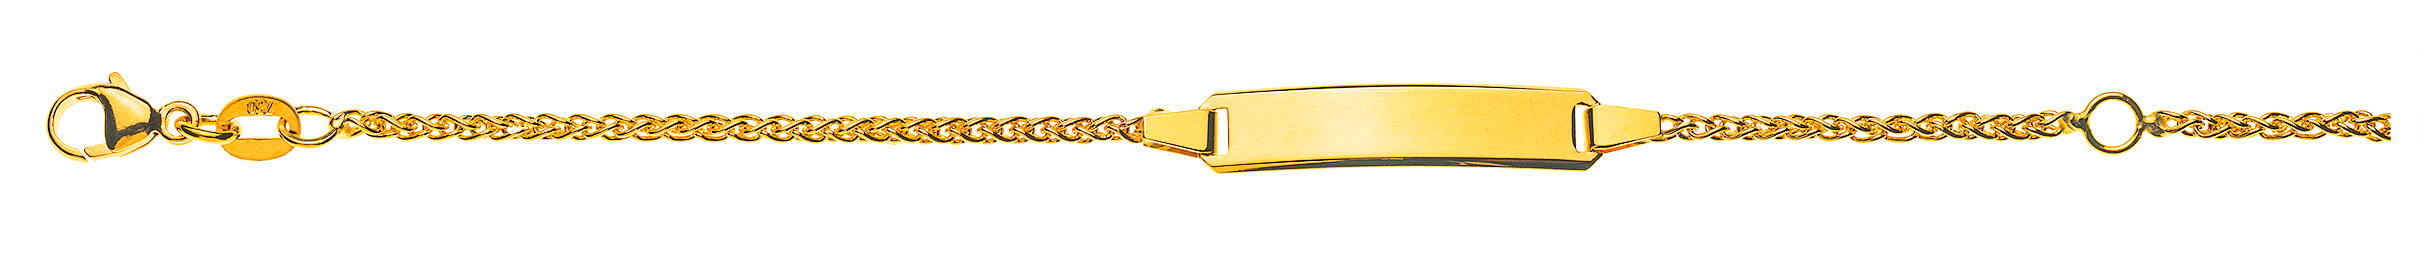 AURONOS Élégance ID bracelet 14k yellow gold plait chain 18cm